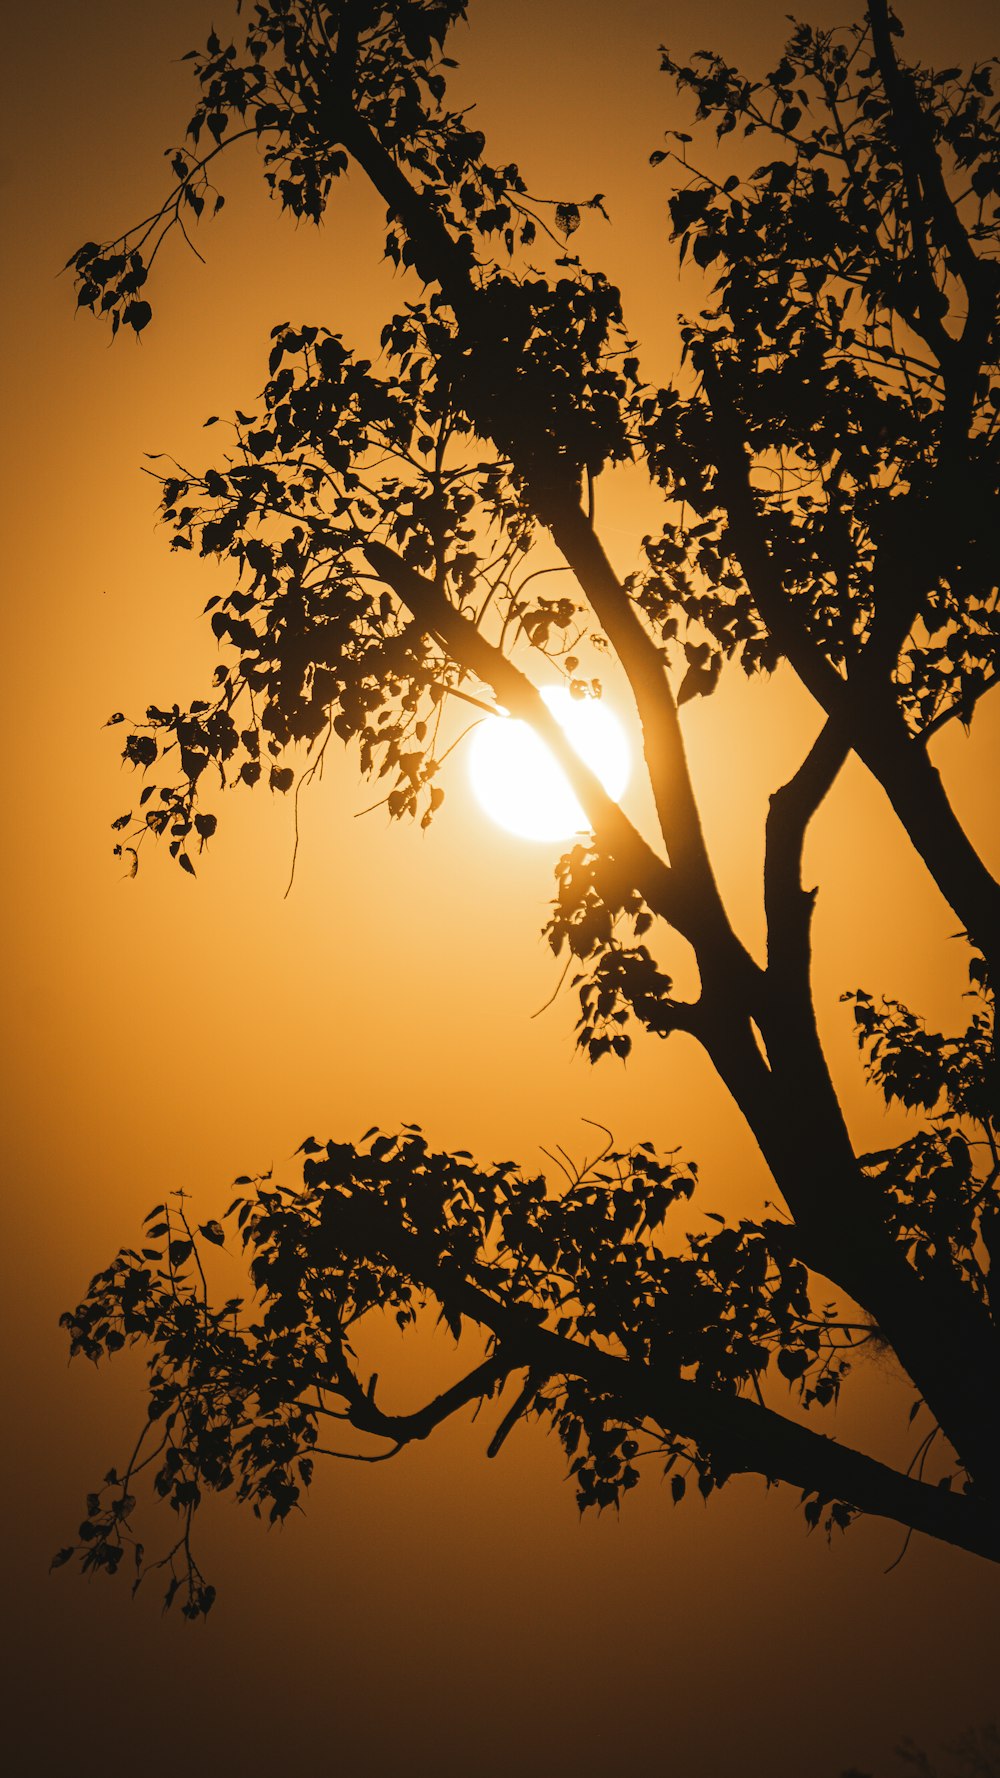 El sol se está poniendo detrás de un árbol sin hojas